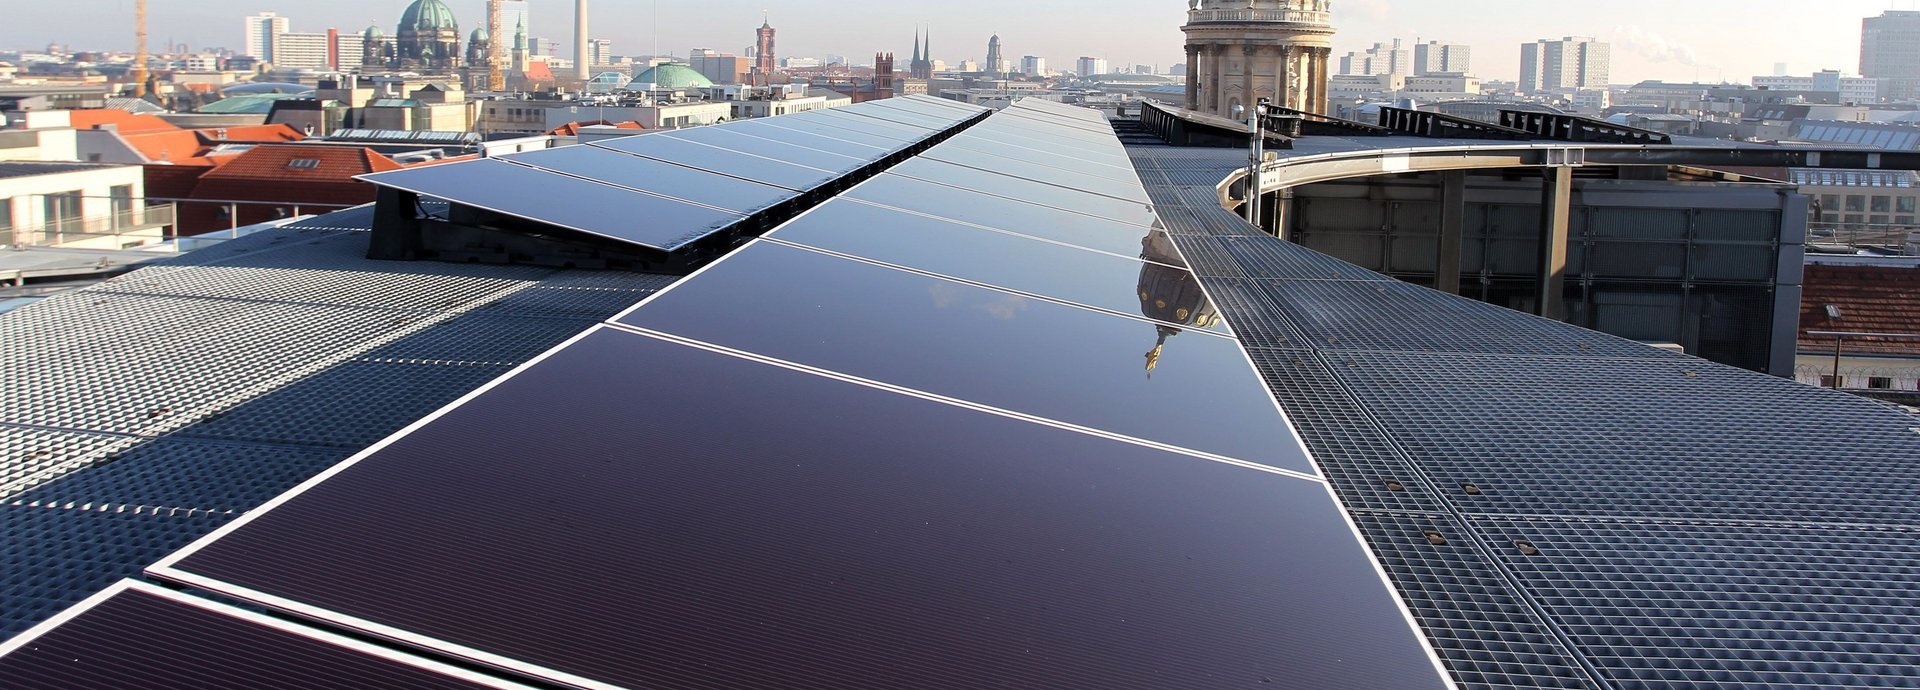 Solarzellen auf einem Dach in Berlin mit dem Fernsehturm am Horizont und blauem Himmel